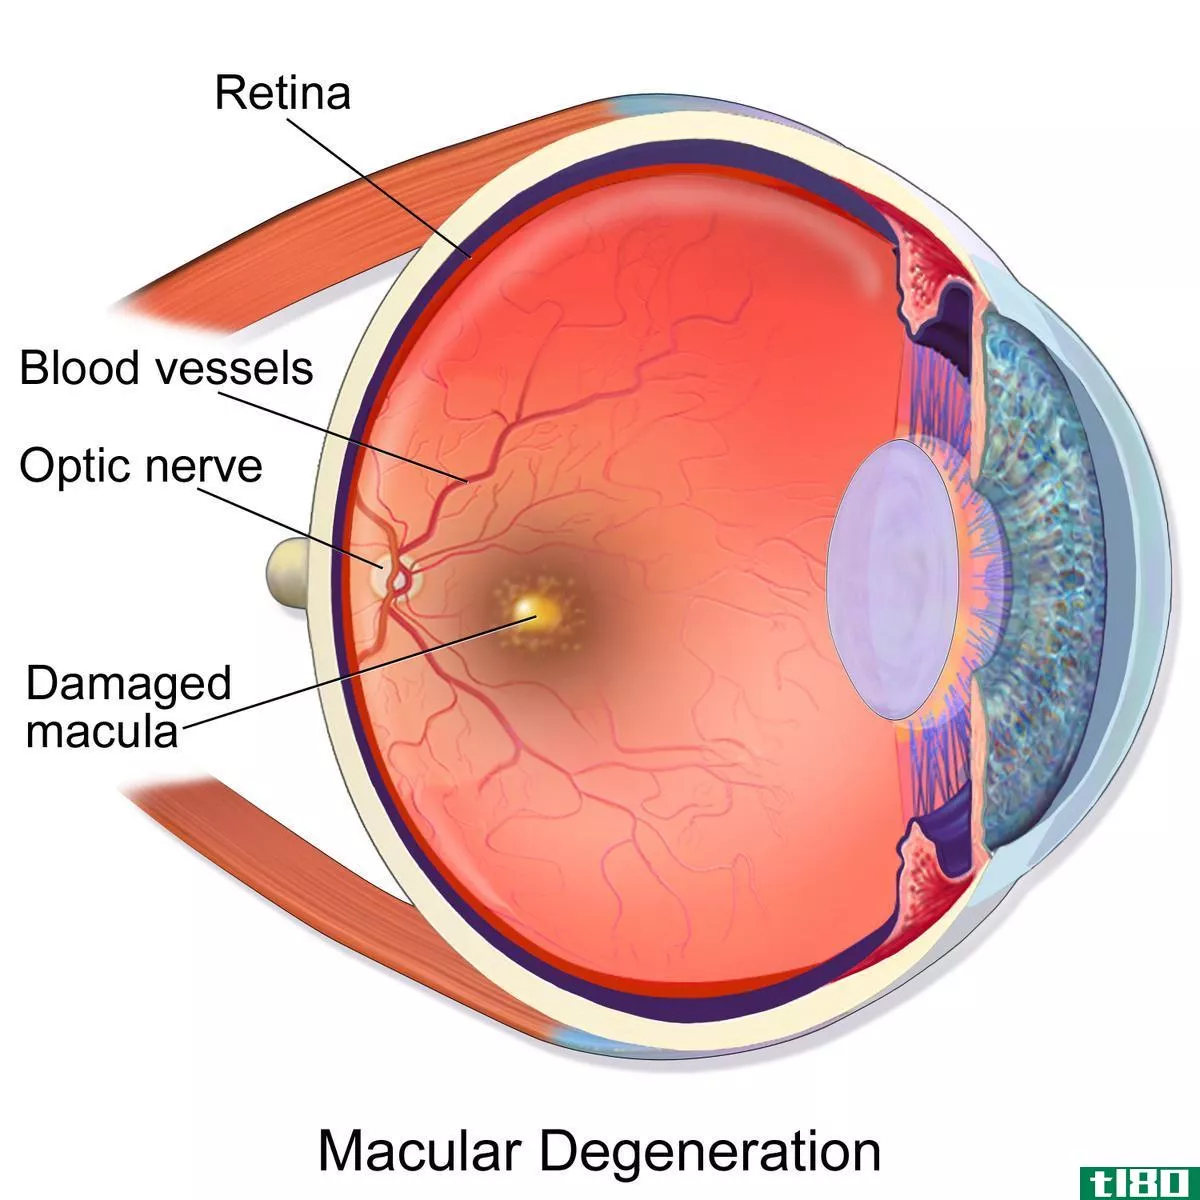 糖尿病性视网膜病变(diabetic retinopathy)和黄斑变性(macular degeneration)的区别